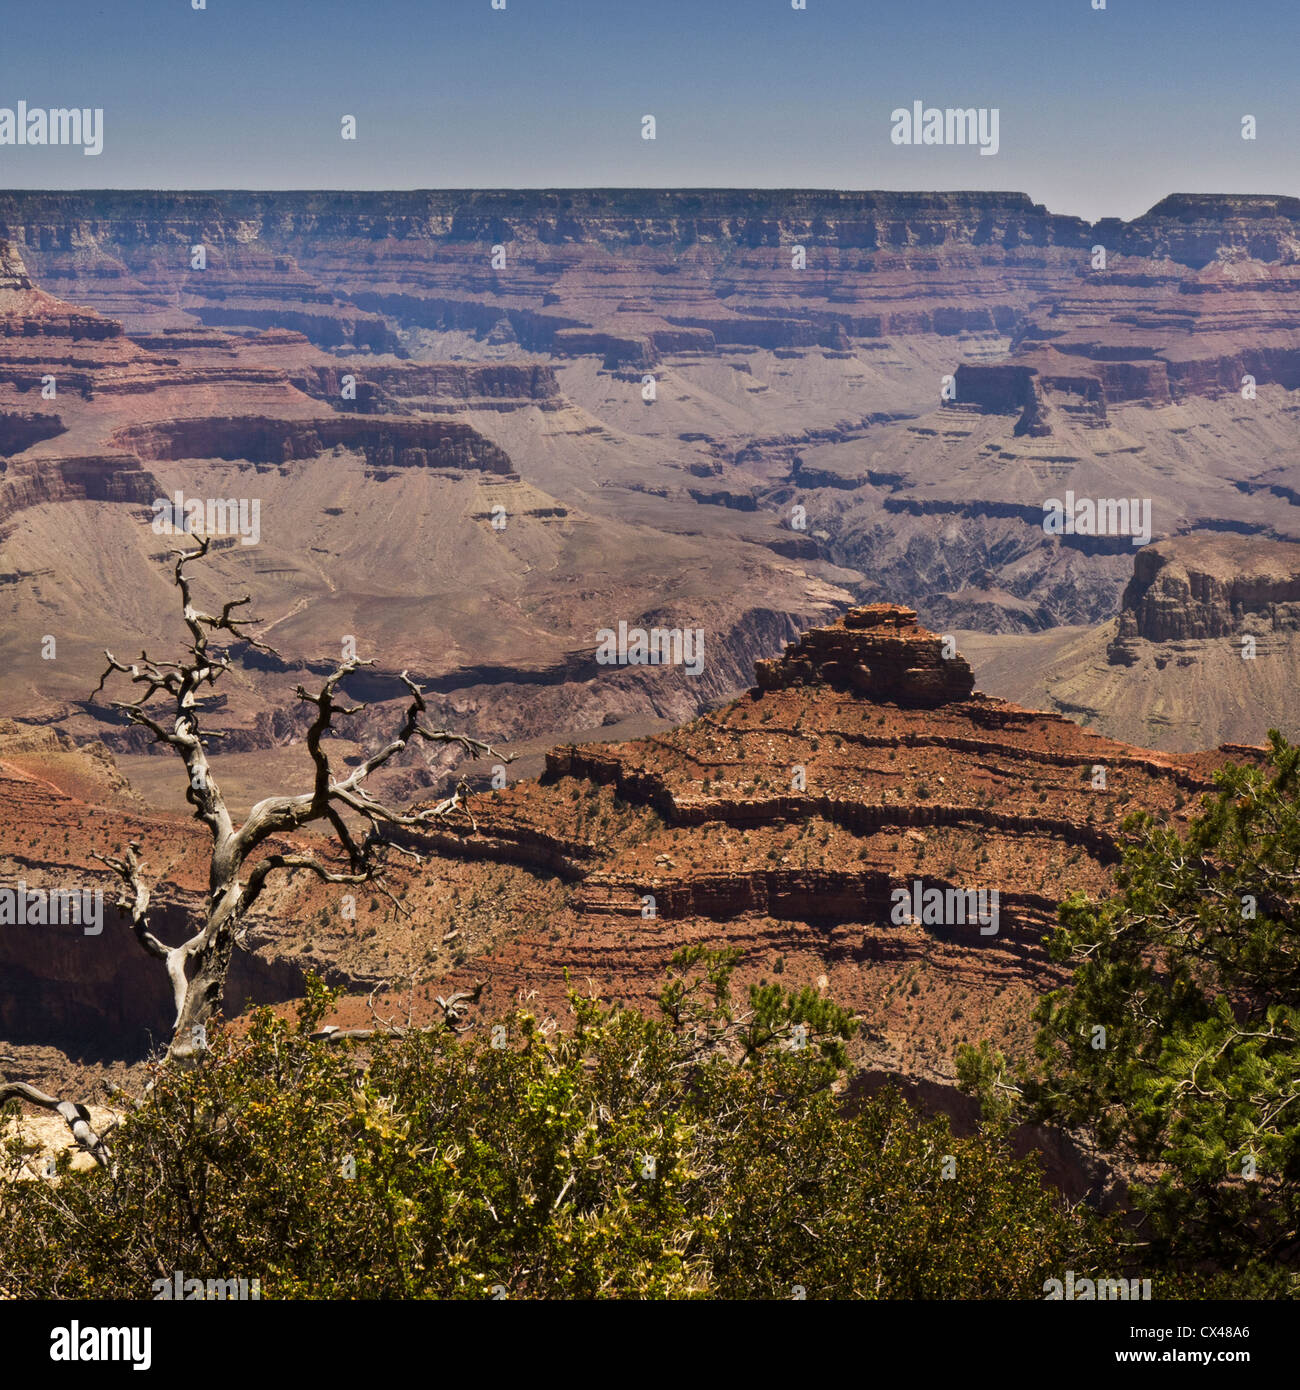 Ein Blick auf die spektakuläre Landschaft des Grand Canyon gesehen vom Südrand in Arizona, USA. Stockfoto